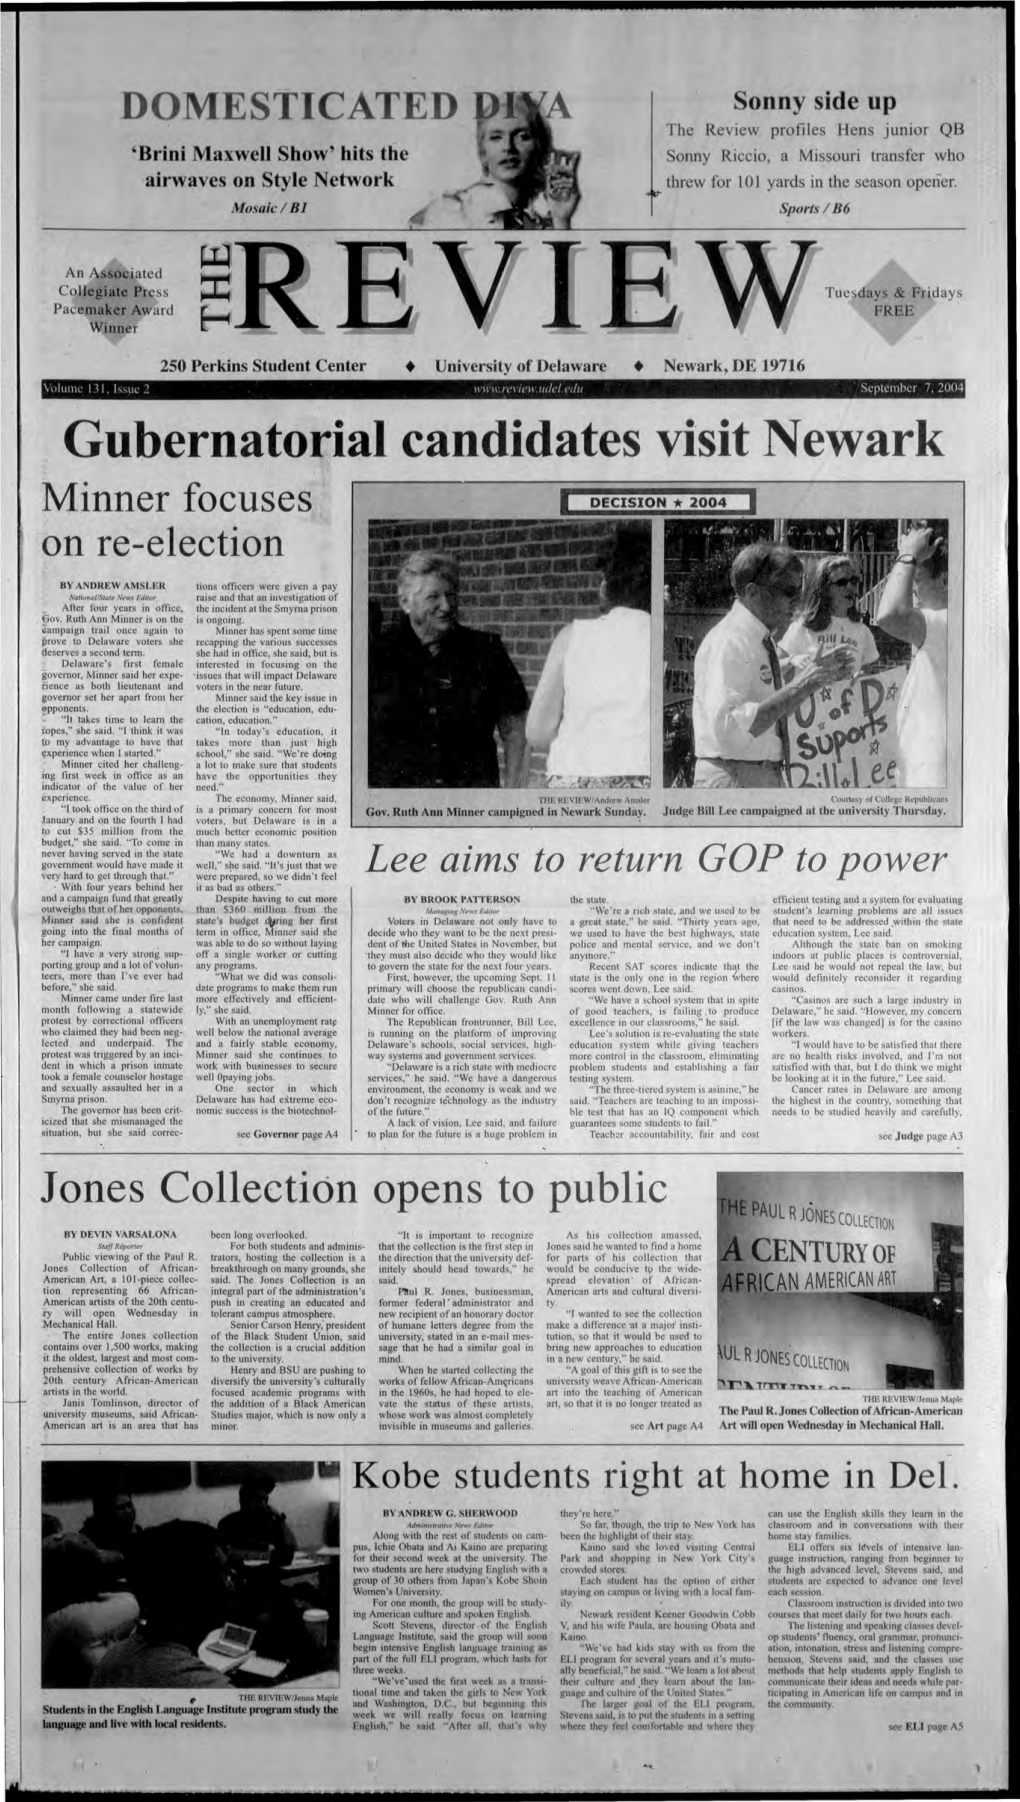 Gubernatorial Candidates Visit Newark Minner Focuses on Re-Election